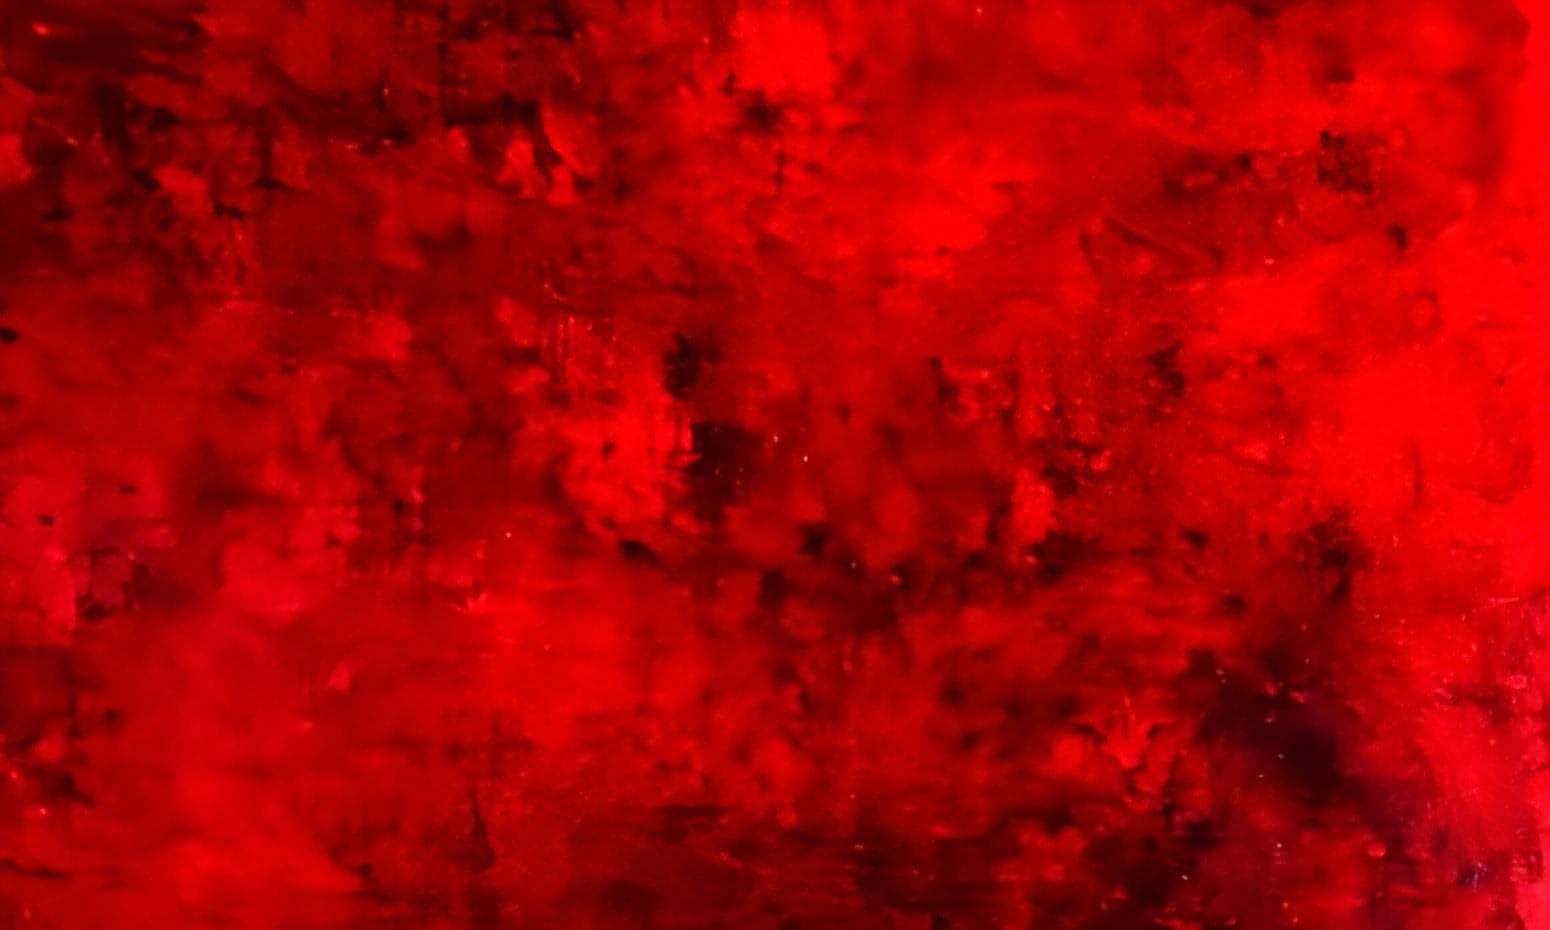  100 x 100 cm / Energiequelle / rot, 120 x 120 cm / Energiequelle / rot, 140 x 100 cm / Energiequelle / rot, 140 x 140 cm / Energiequelle / rot, 160 x 160 cm / Energiequelle / rot  abstrakte acrylbilder auf leinwand